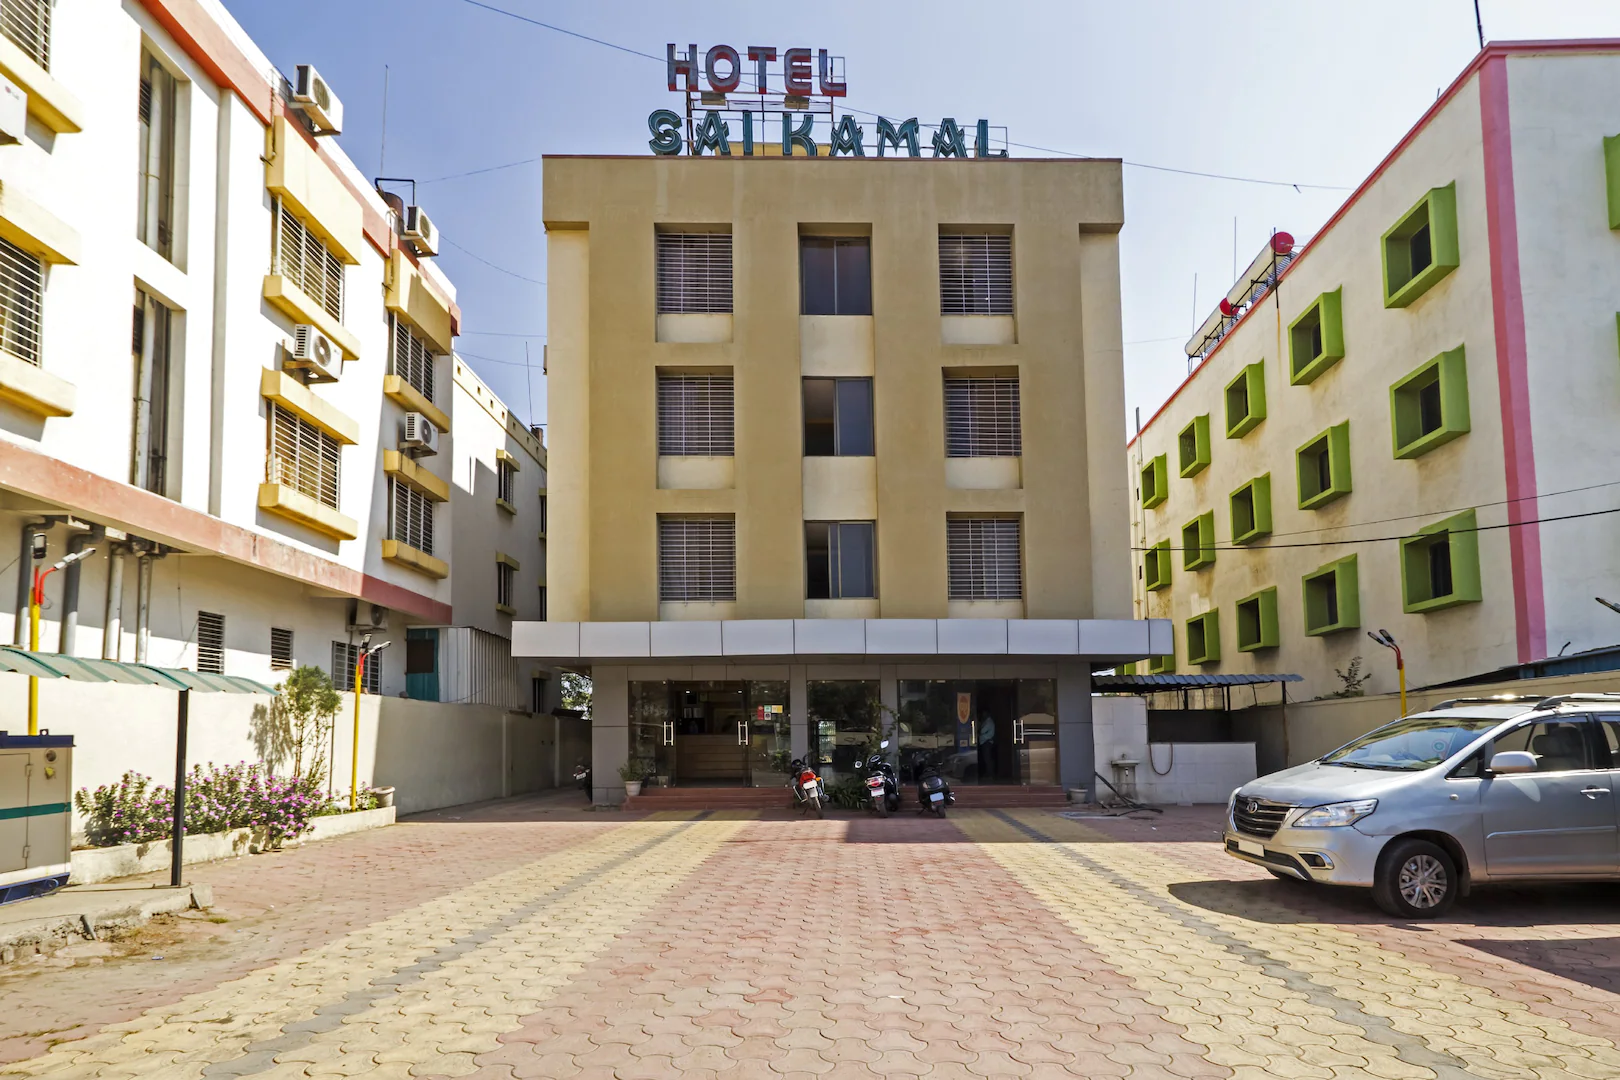 HOTEL SAI KAMAL